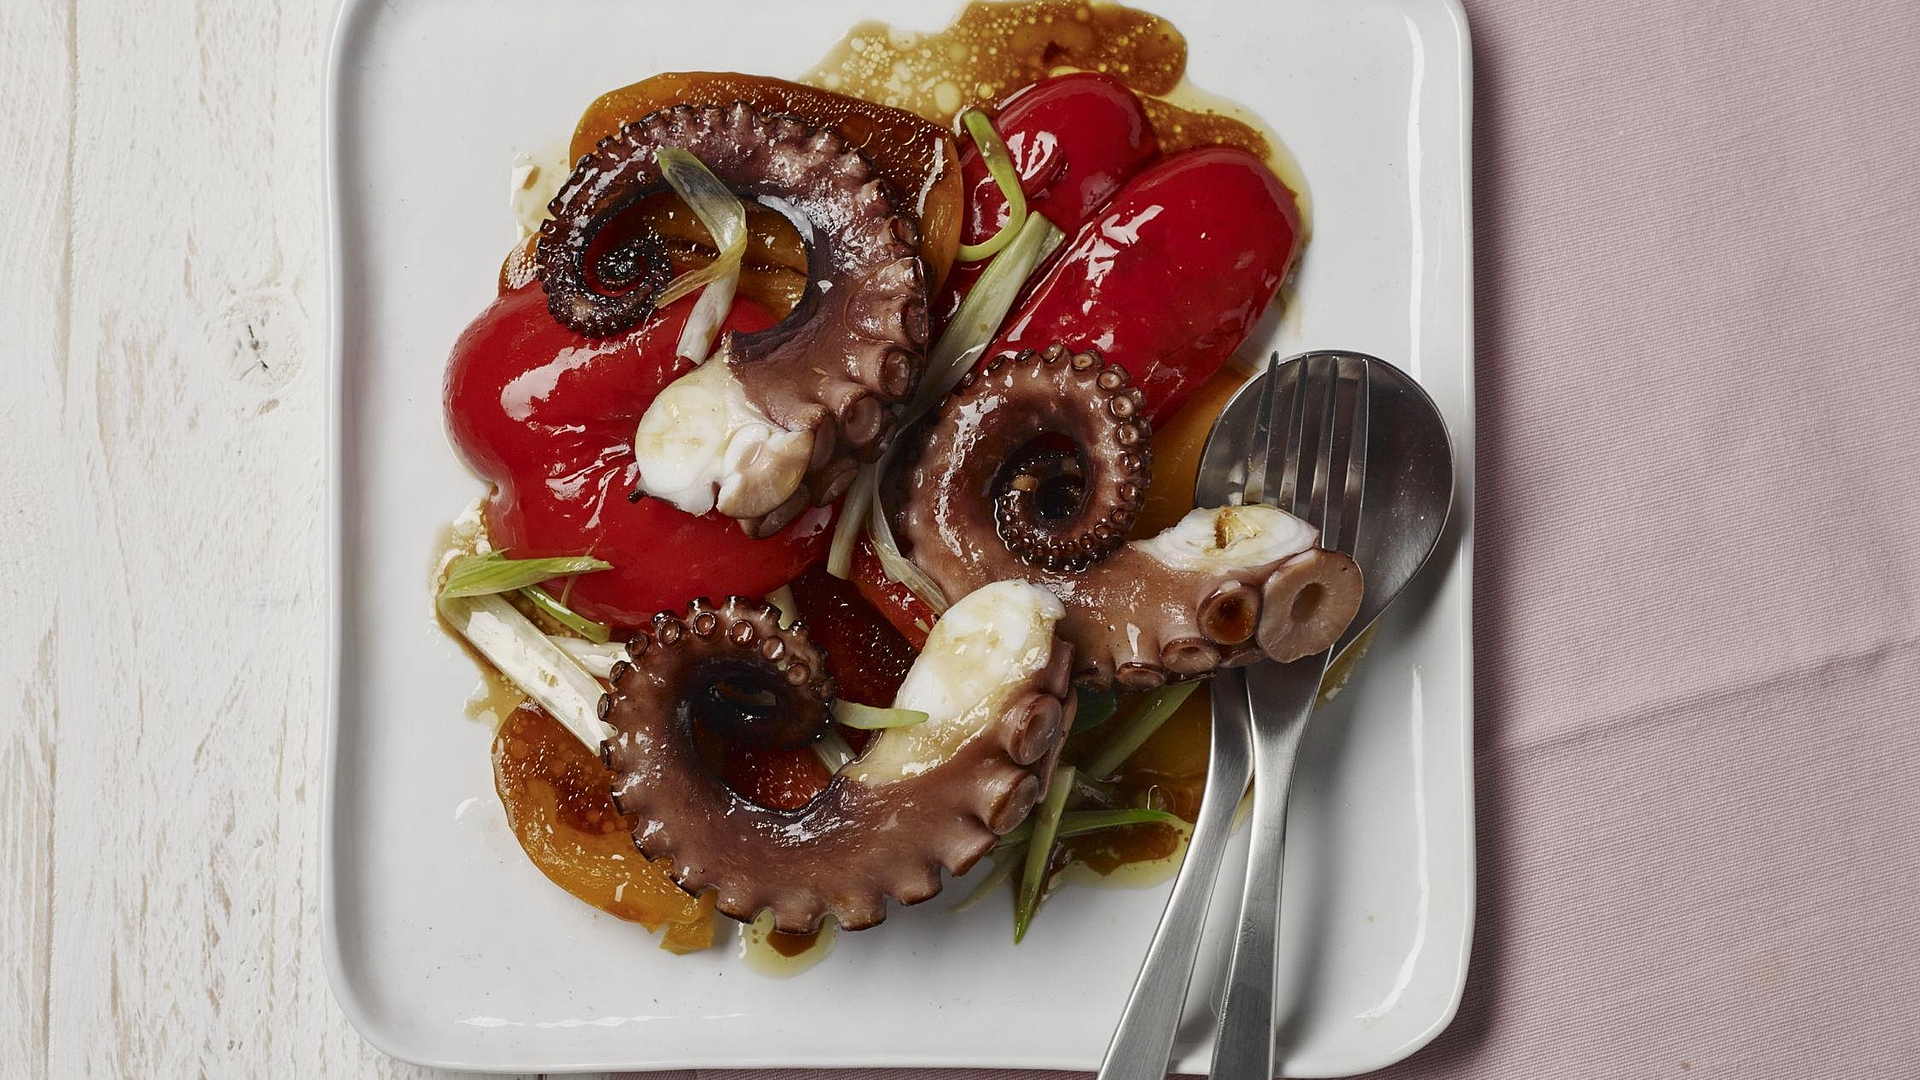 Octopus op gemarineerde paprika uit de 10|10 dealereditie